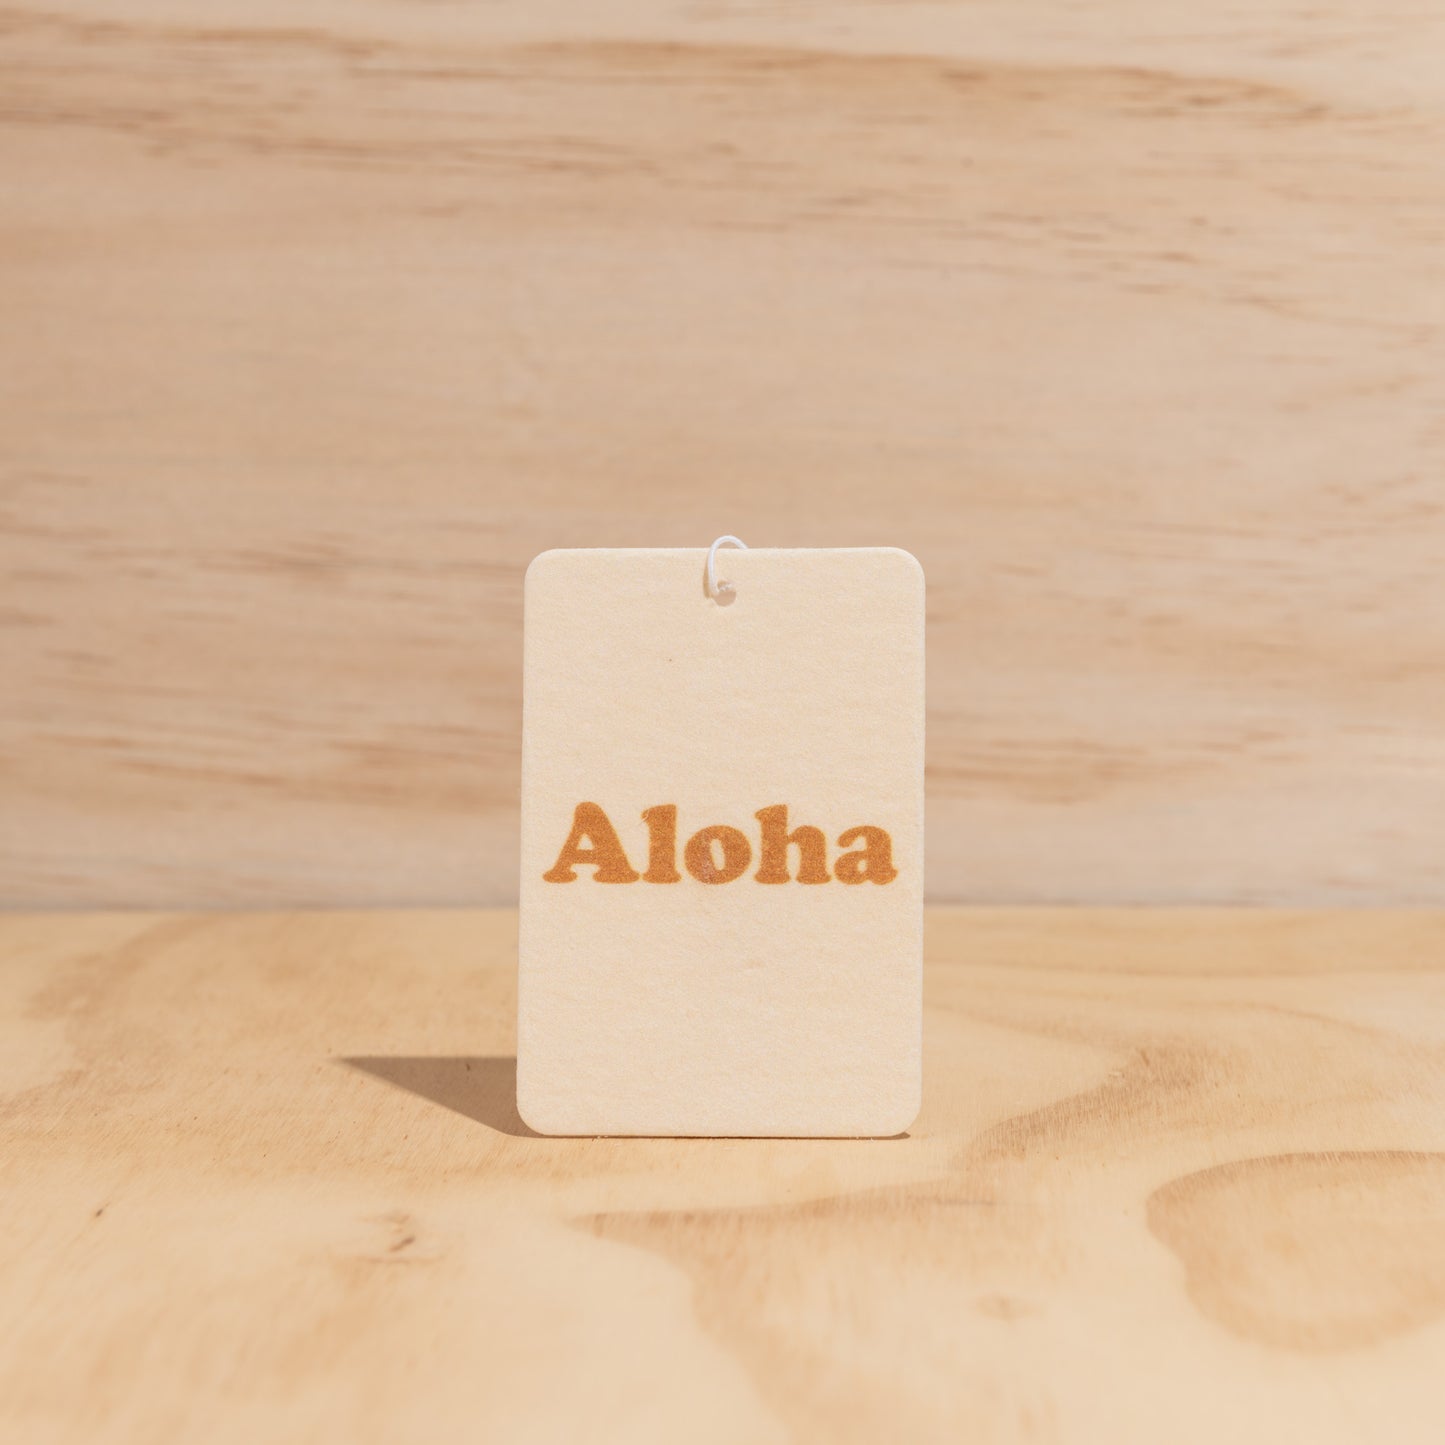 Aloha Air Freshener - Mali